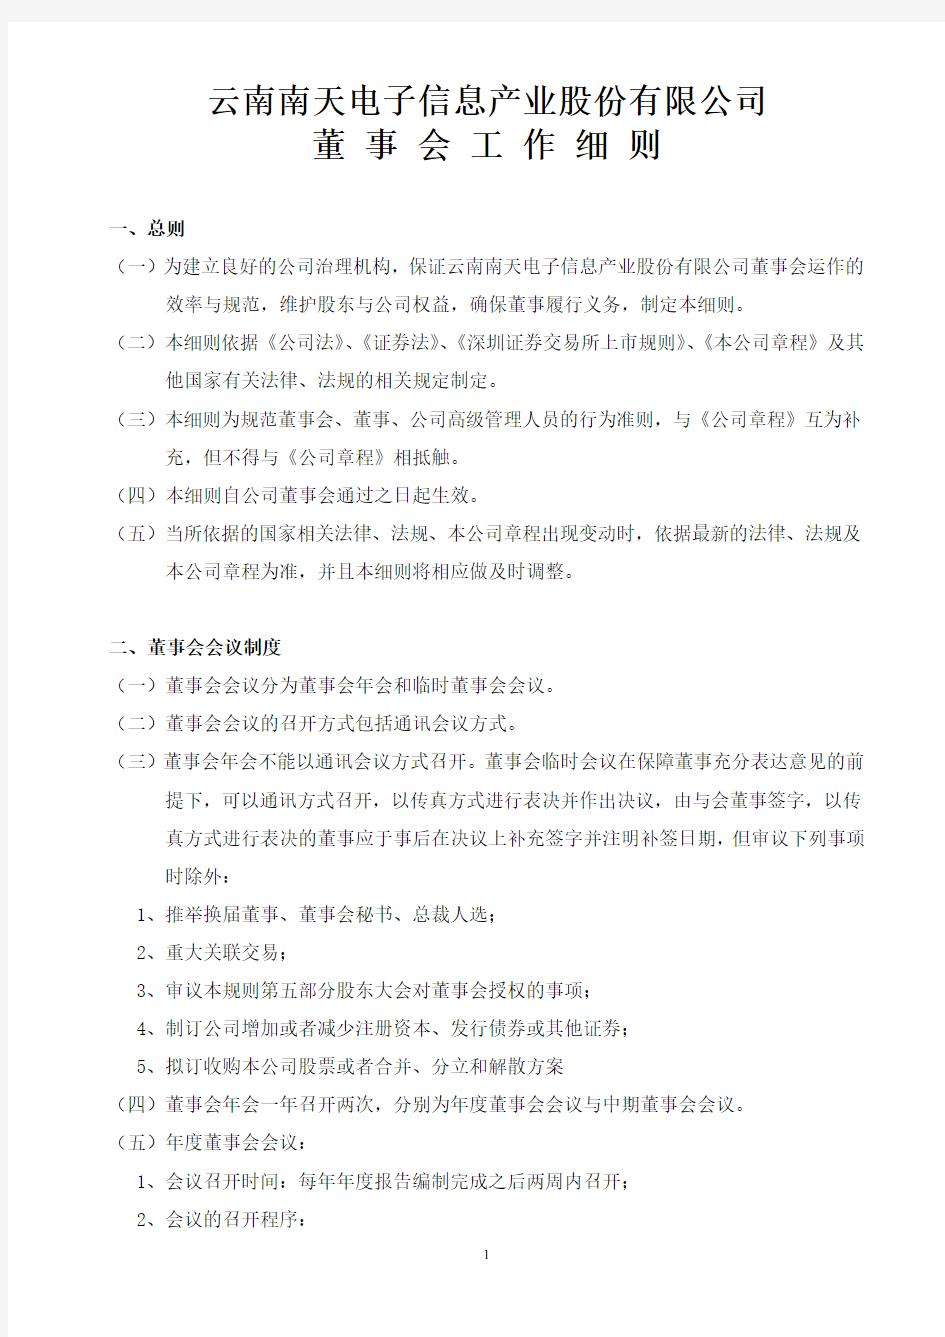 云南南天电子信息产业股份有限公司董事会工作细则